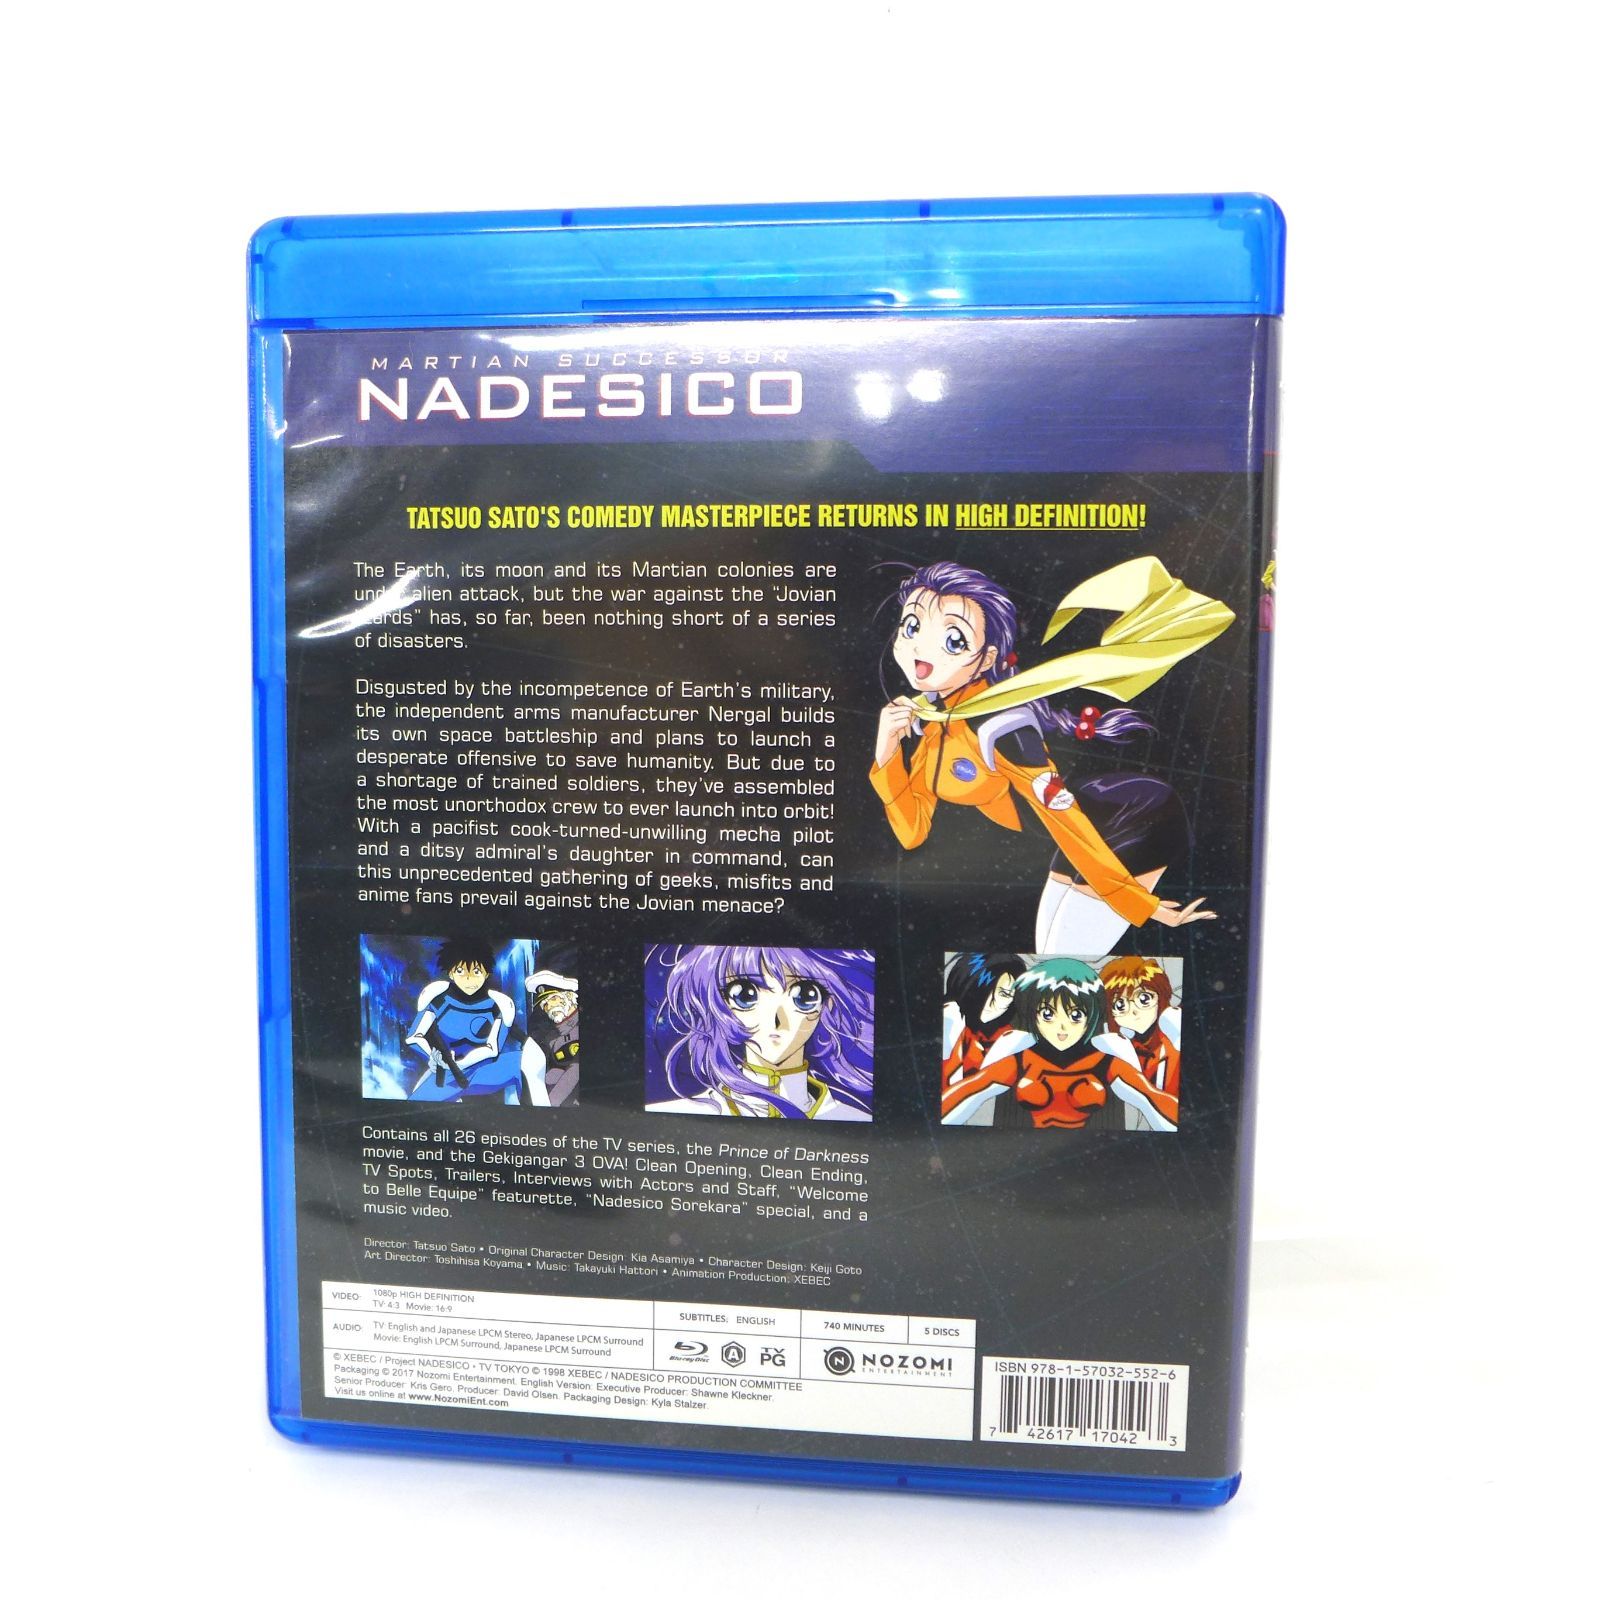 北米版 MARTIAN SUCCESSOR NADESICO 機動戦艦 ナデシコ COMPLETE COLLECTION コンプリート コレクション  Blu-ray ブルーレイ 5枚組 中古